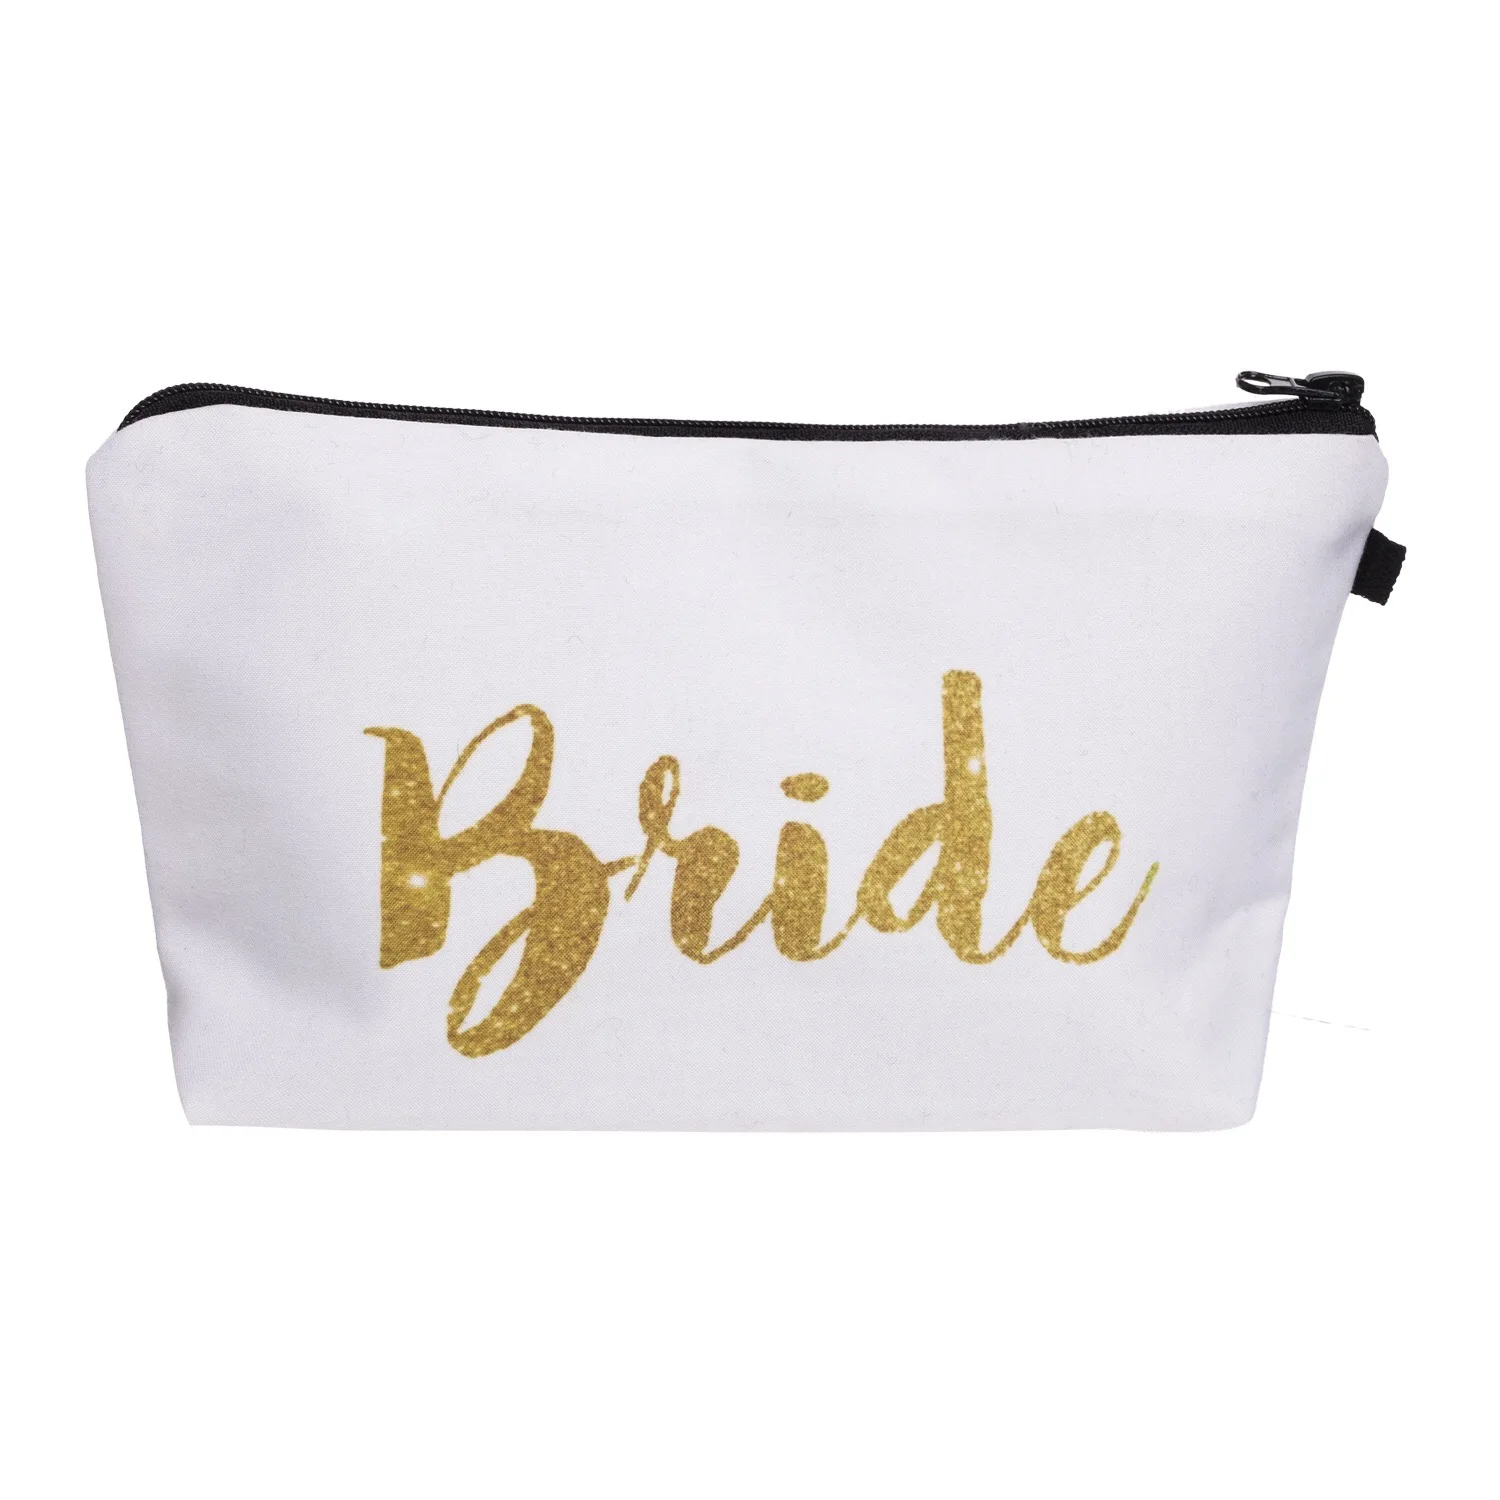 Команда надпись «Bride Tribe», чтобы быть Подарочная косметичка для подружек невесты предложение женитьбы Девичник вечерние украшения для девичника пользу